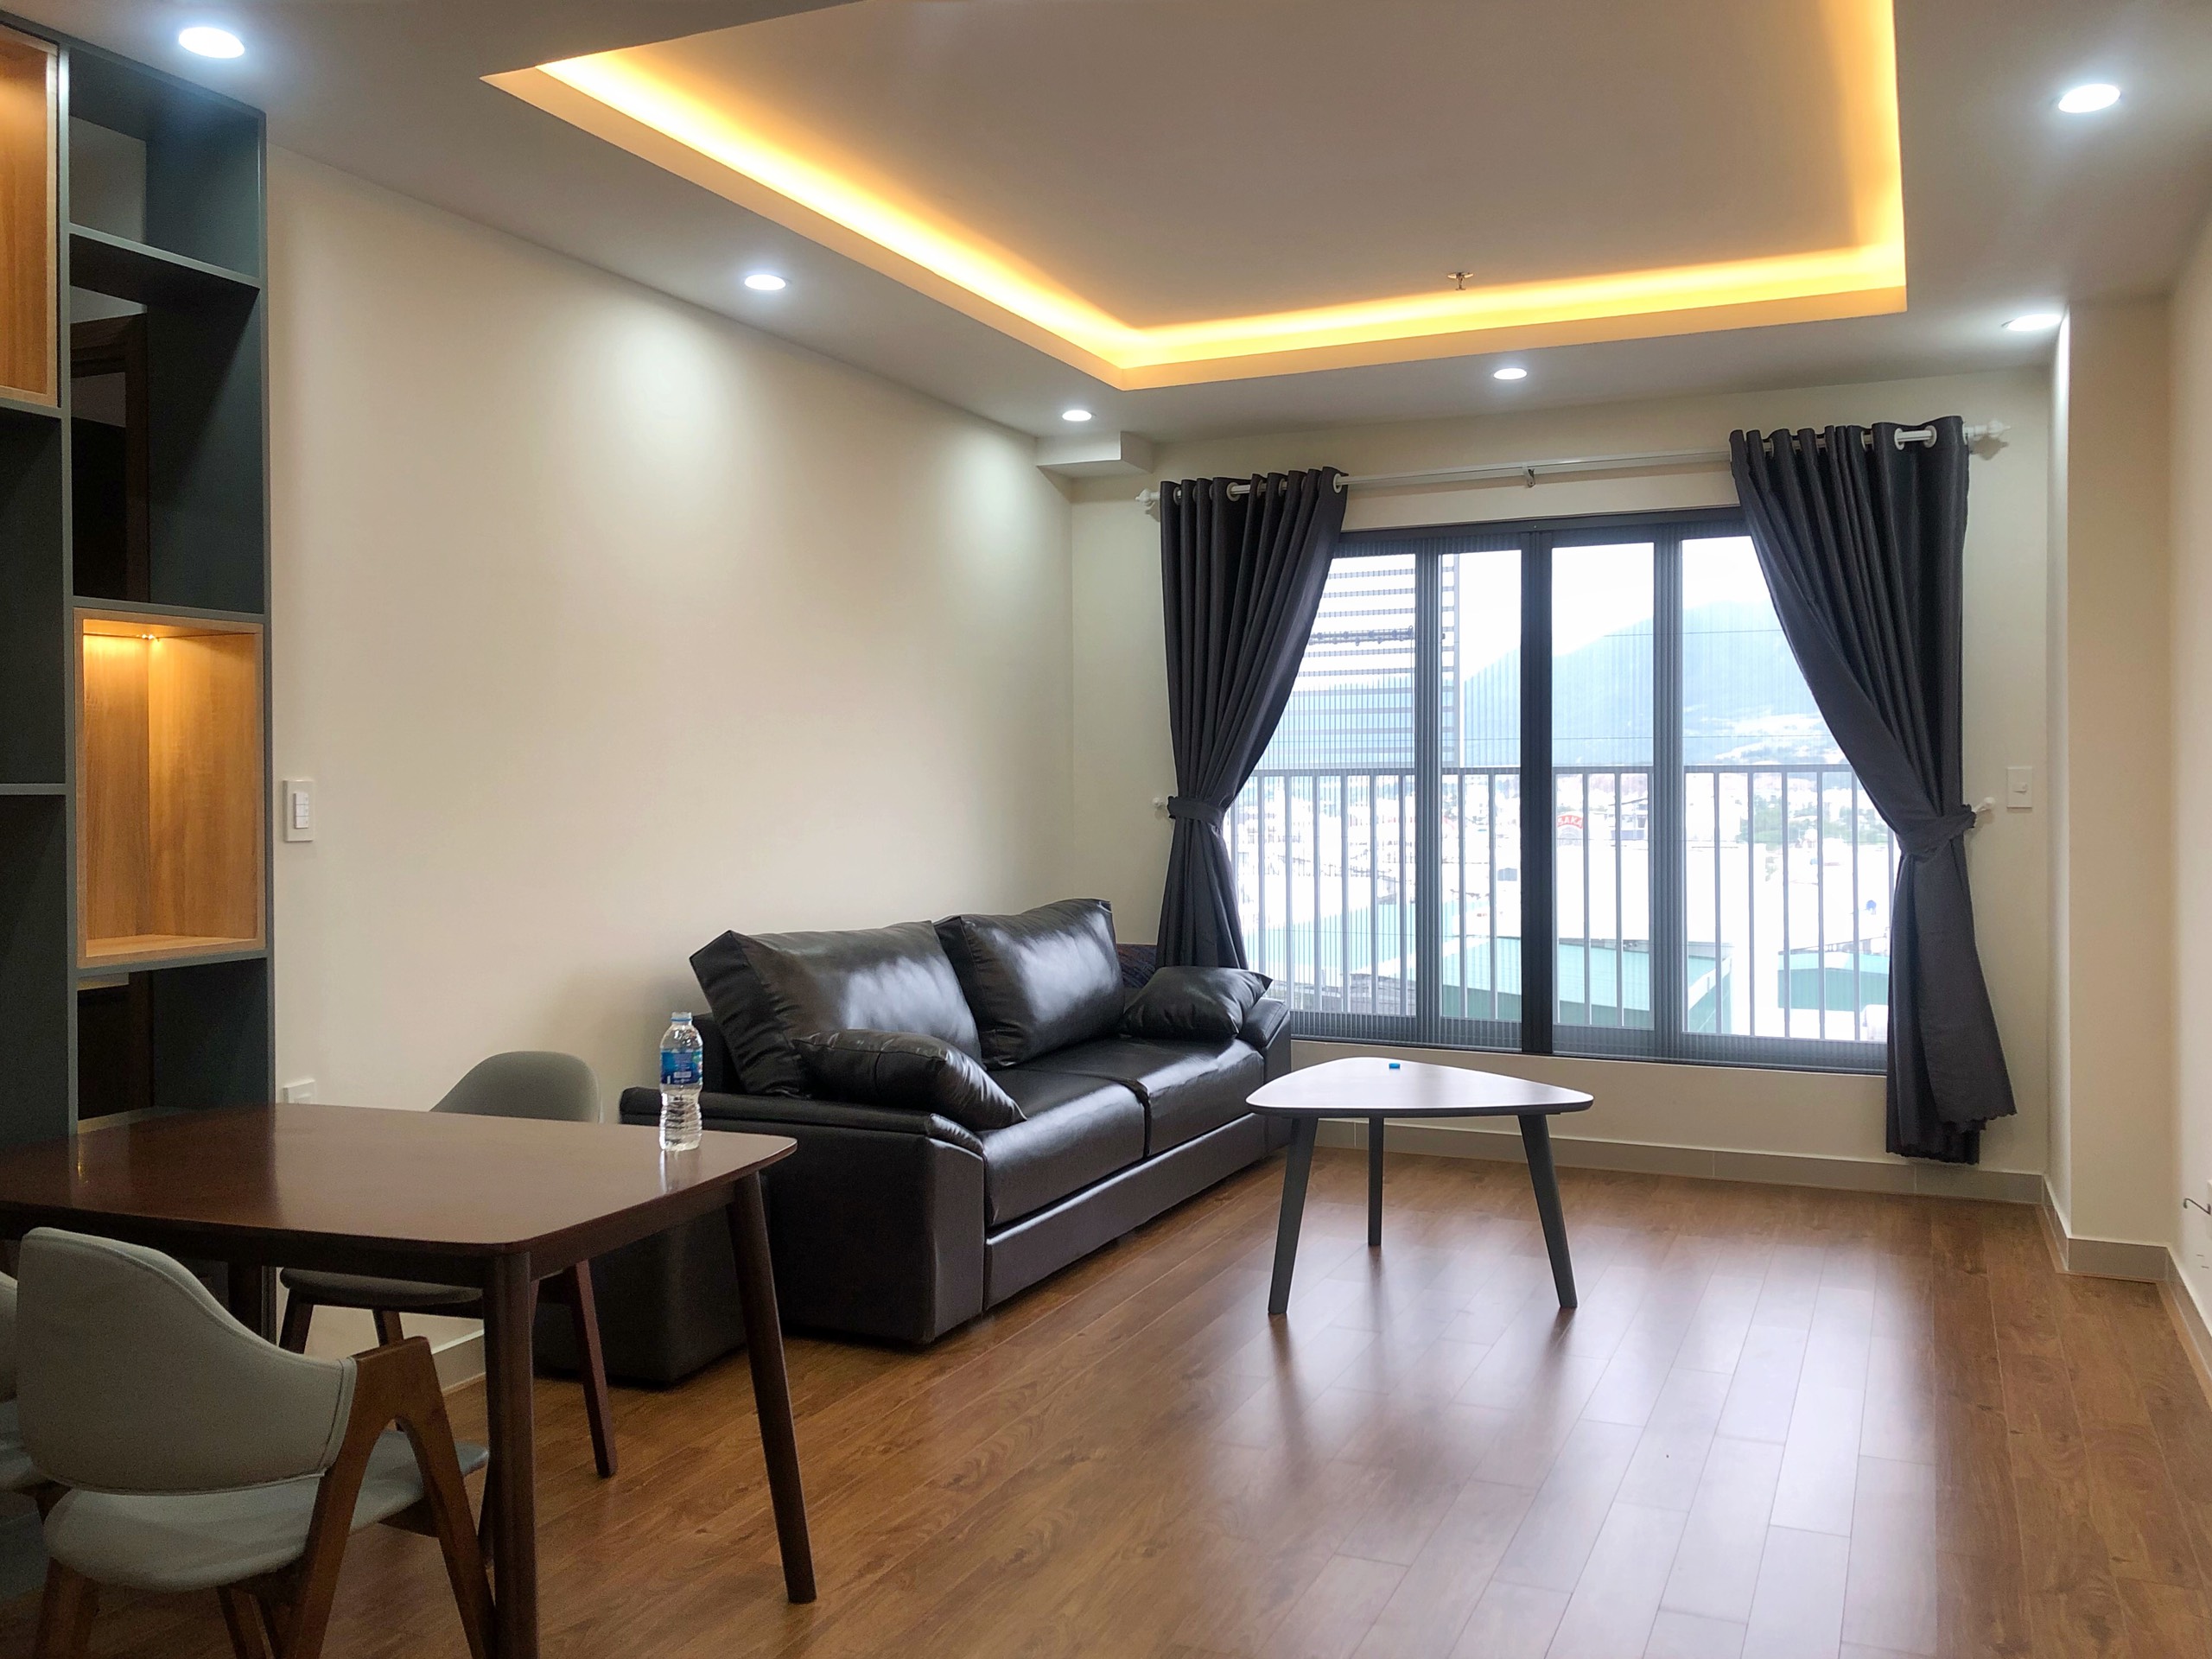 Bán căn hộ đẹp 1pn chung cư CT4 VCN Phước Hải, đầy đủ nội thất đẹp sang trọng, hiện đại